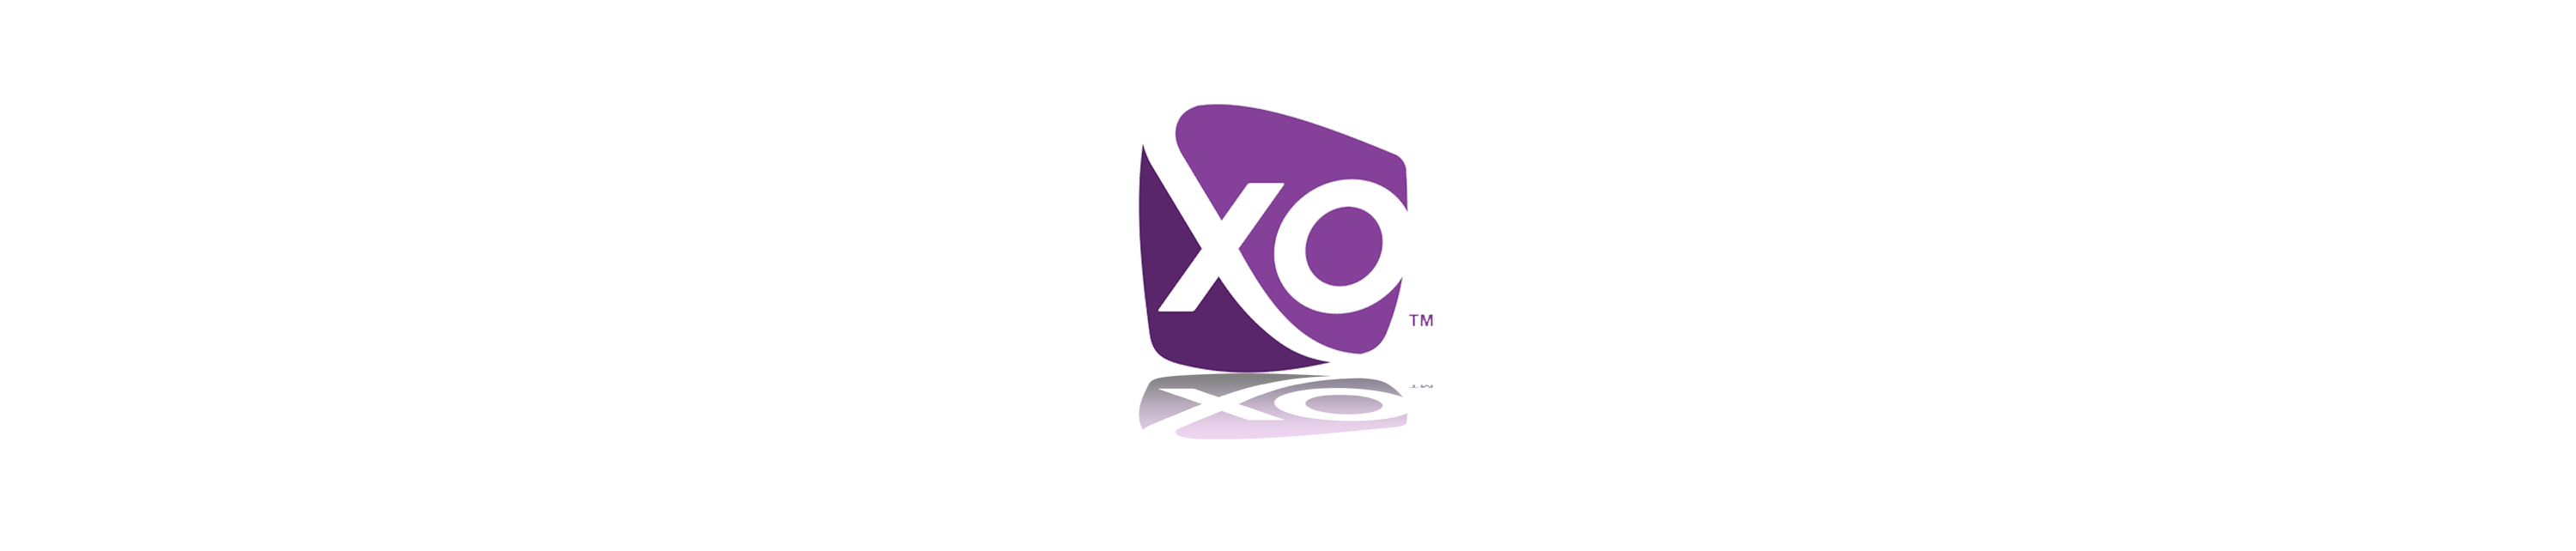 XO Communications Logo - XO Communications